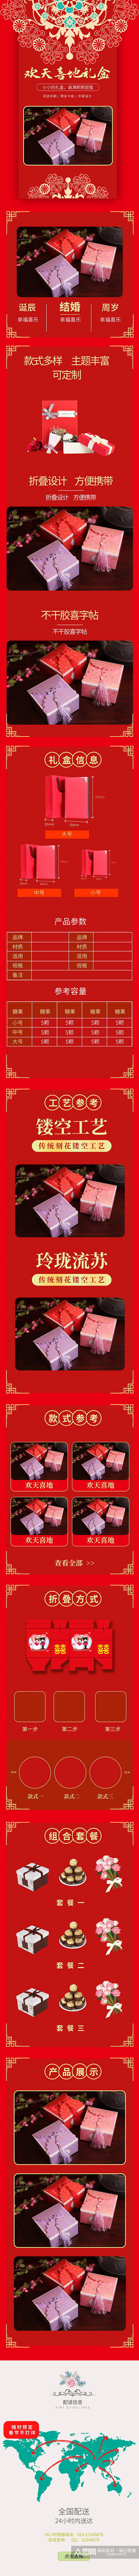 中国风喜糖礼盒产品展示素材